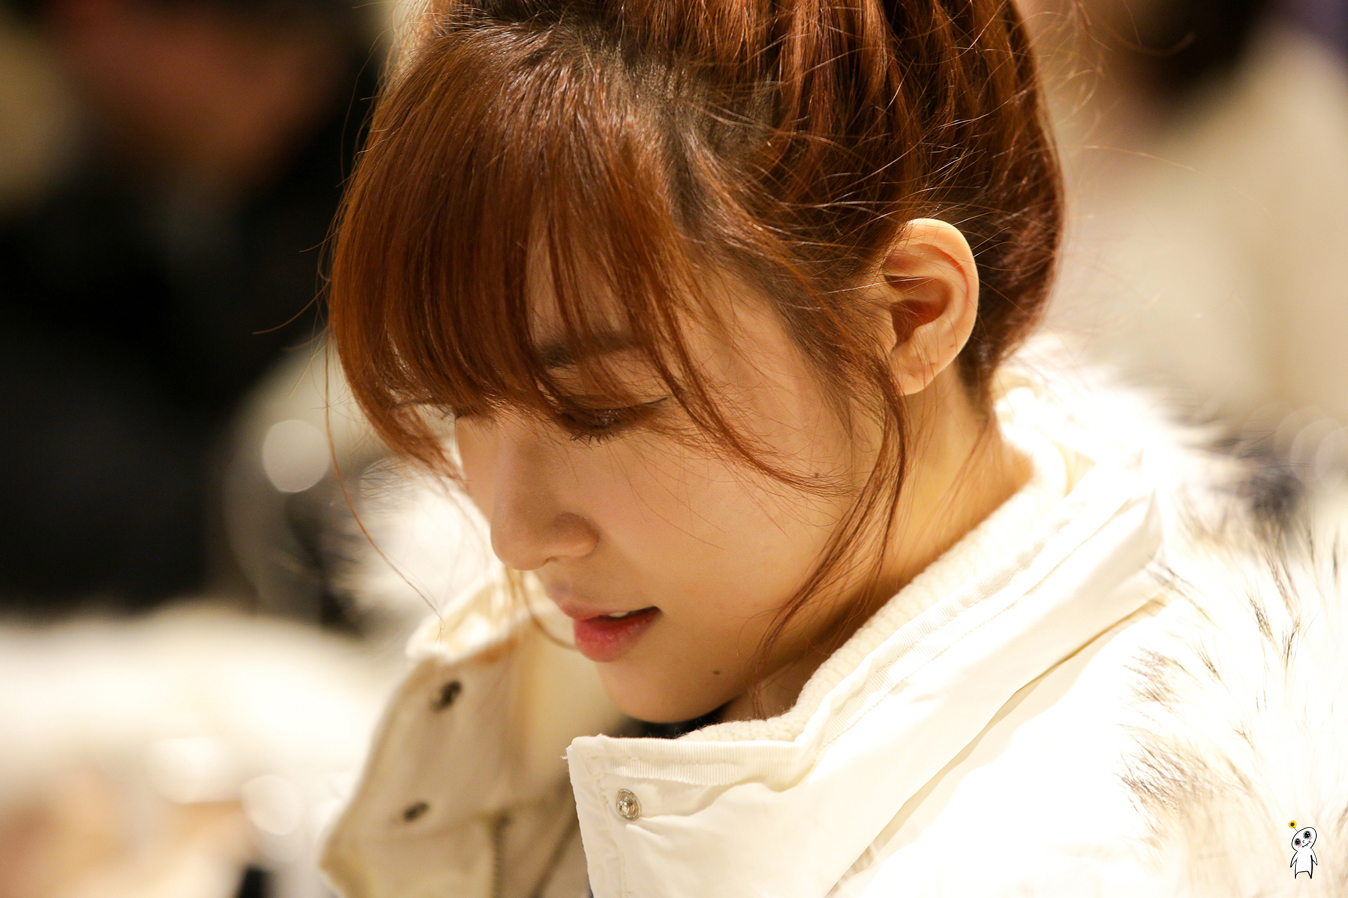 [PIC][28-11-2013]Tiffany ghé thăm cửa hàng "QUA" ở Hyundai Department Store vào trưa nay - Page 2 2558D63D52980C870CB736